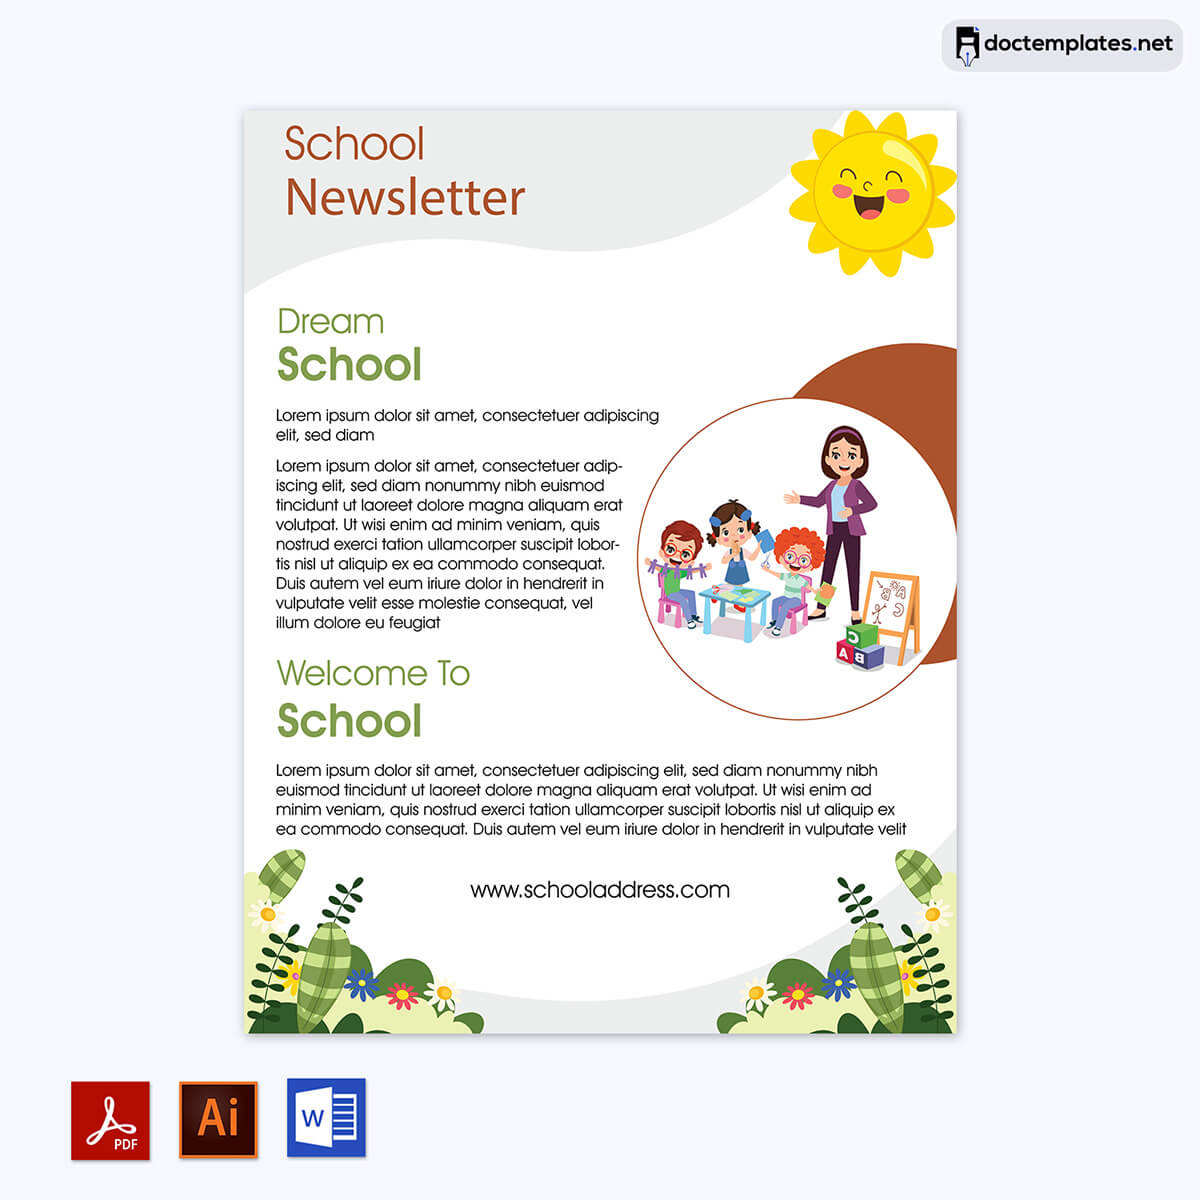 
preschool newsletter template google docs
02